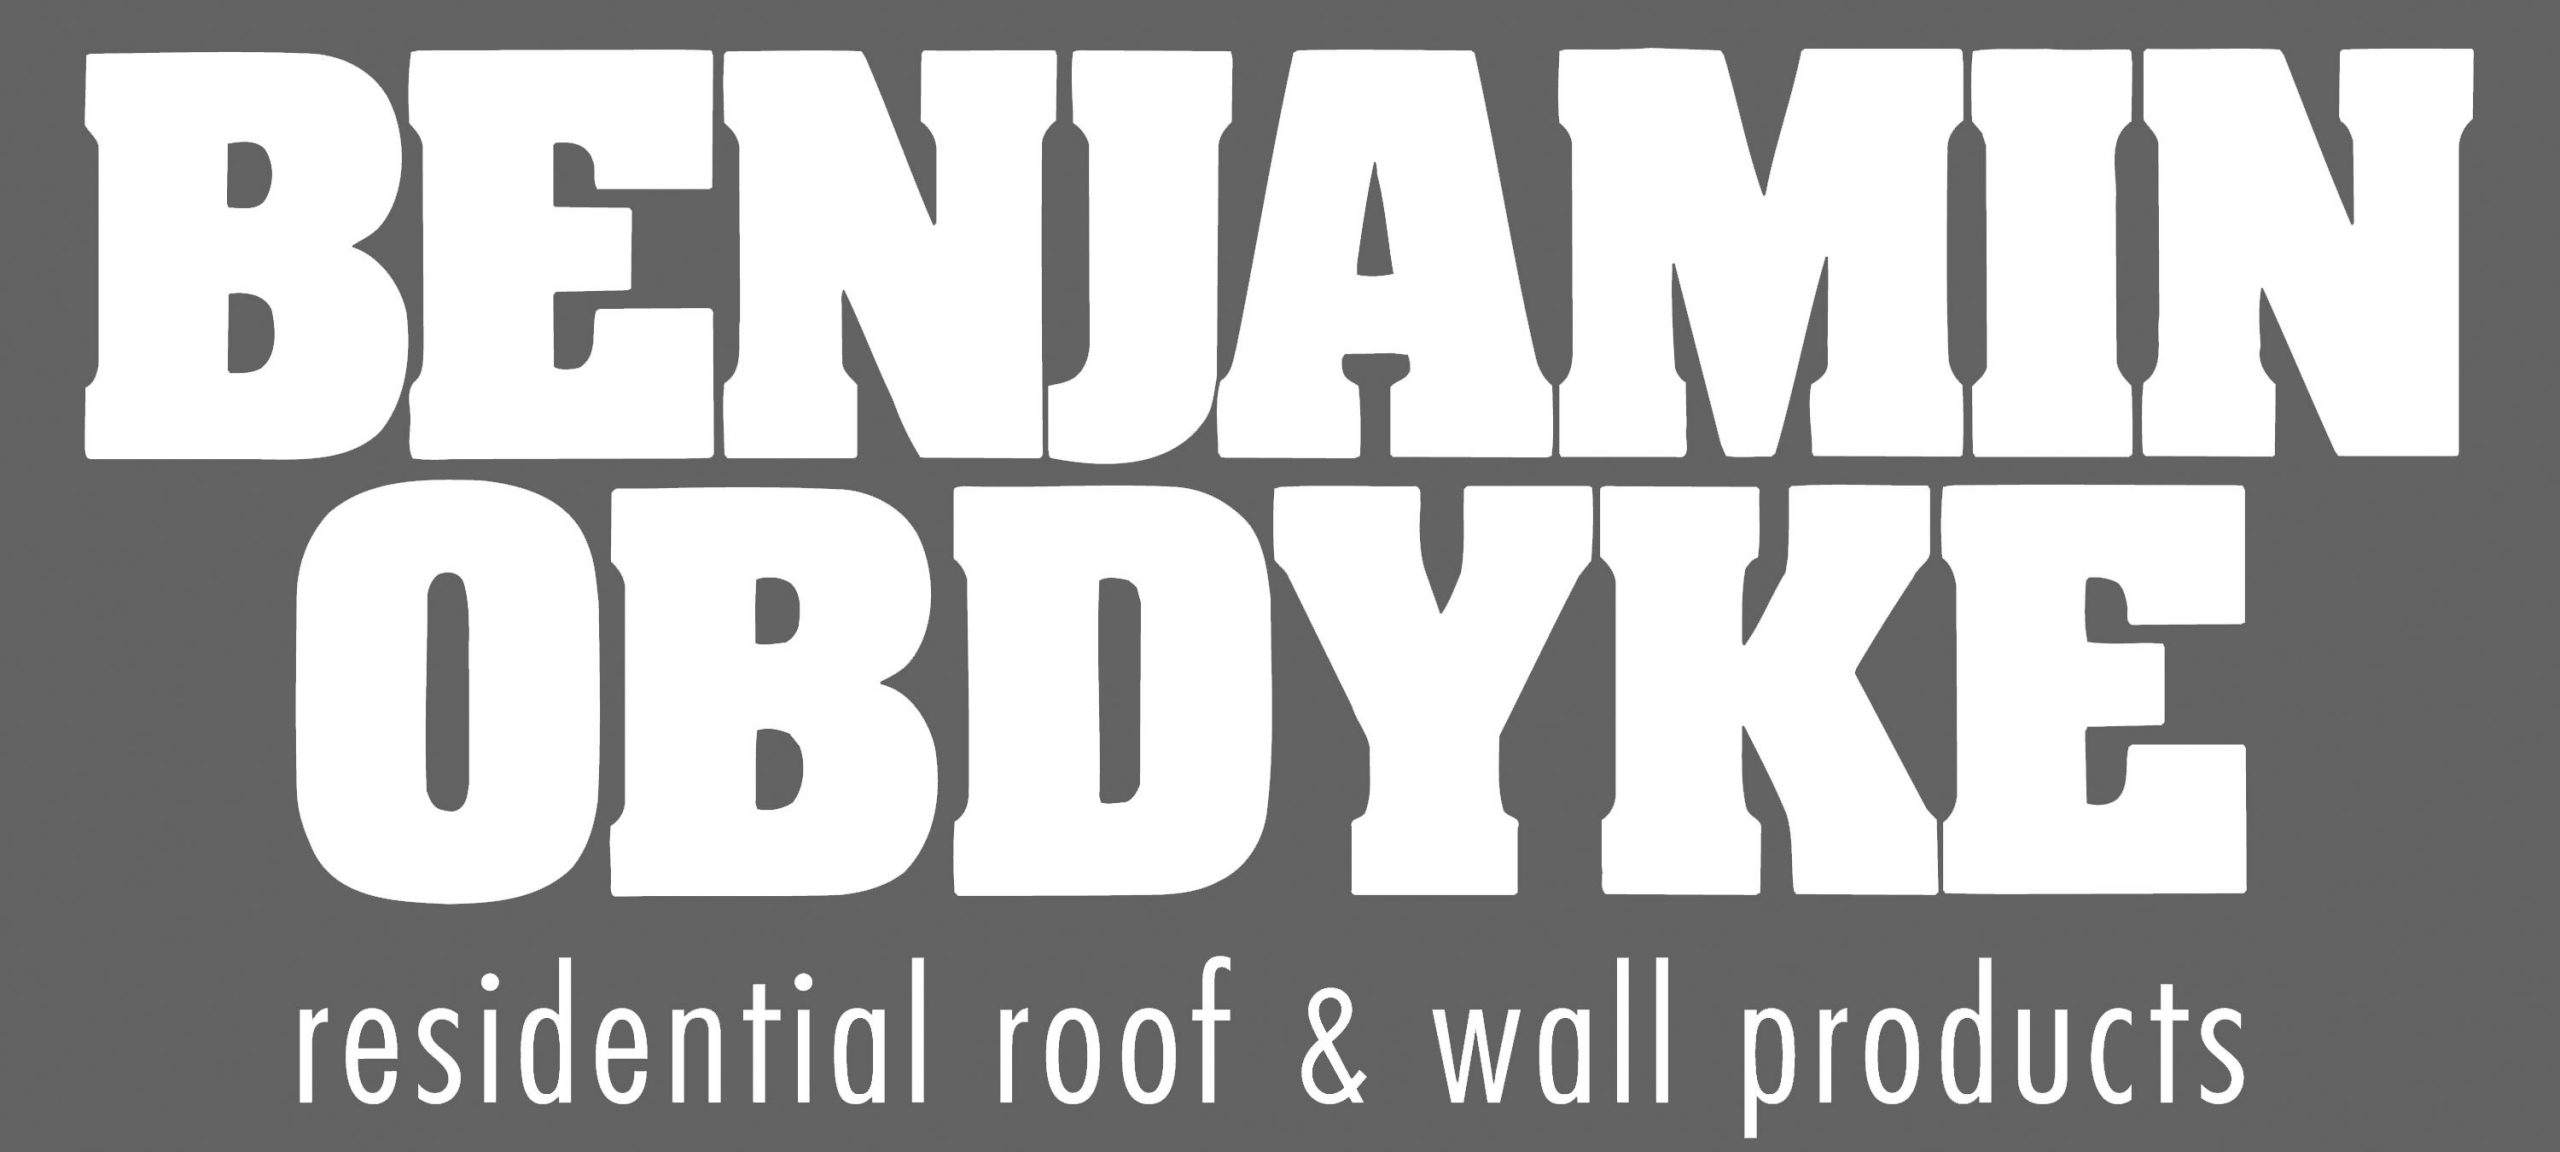 Benjamin_Obdyke_Corporate_Logo